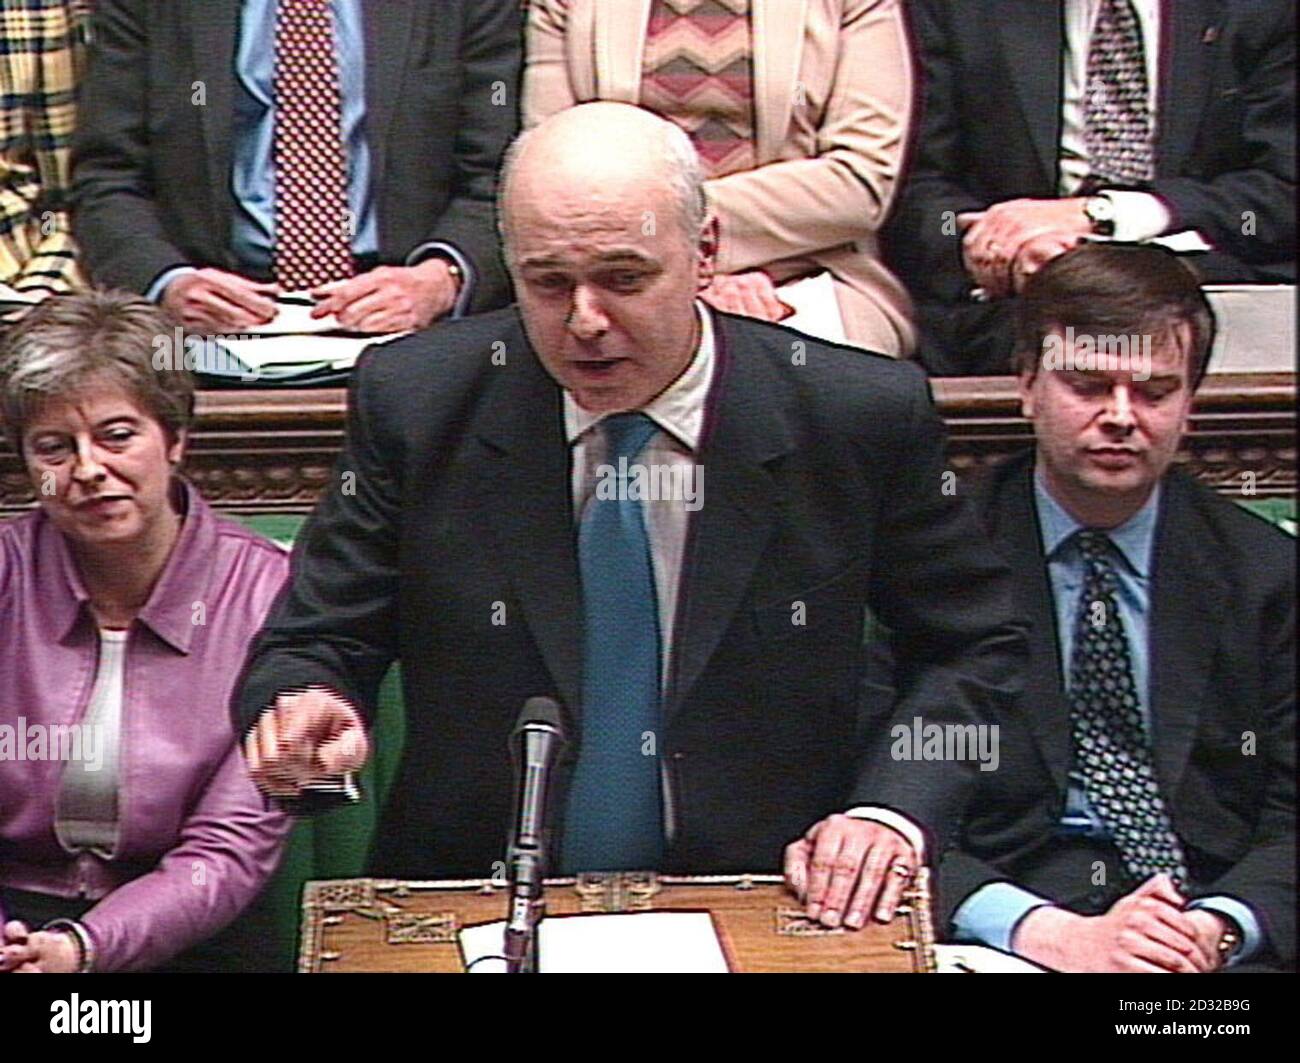 Le chef conservateur Ian Duncan Smith pose une question au ministre Tony Blair à la Chambre des communes pendant l'heure hebdomadaire régulière des questions parlementaires pour le PM. C'était la première depuis que les députés sont revenus de leurs vacances de Noël. Banque D'Images